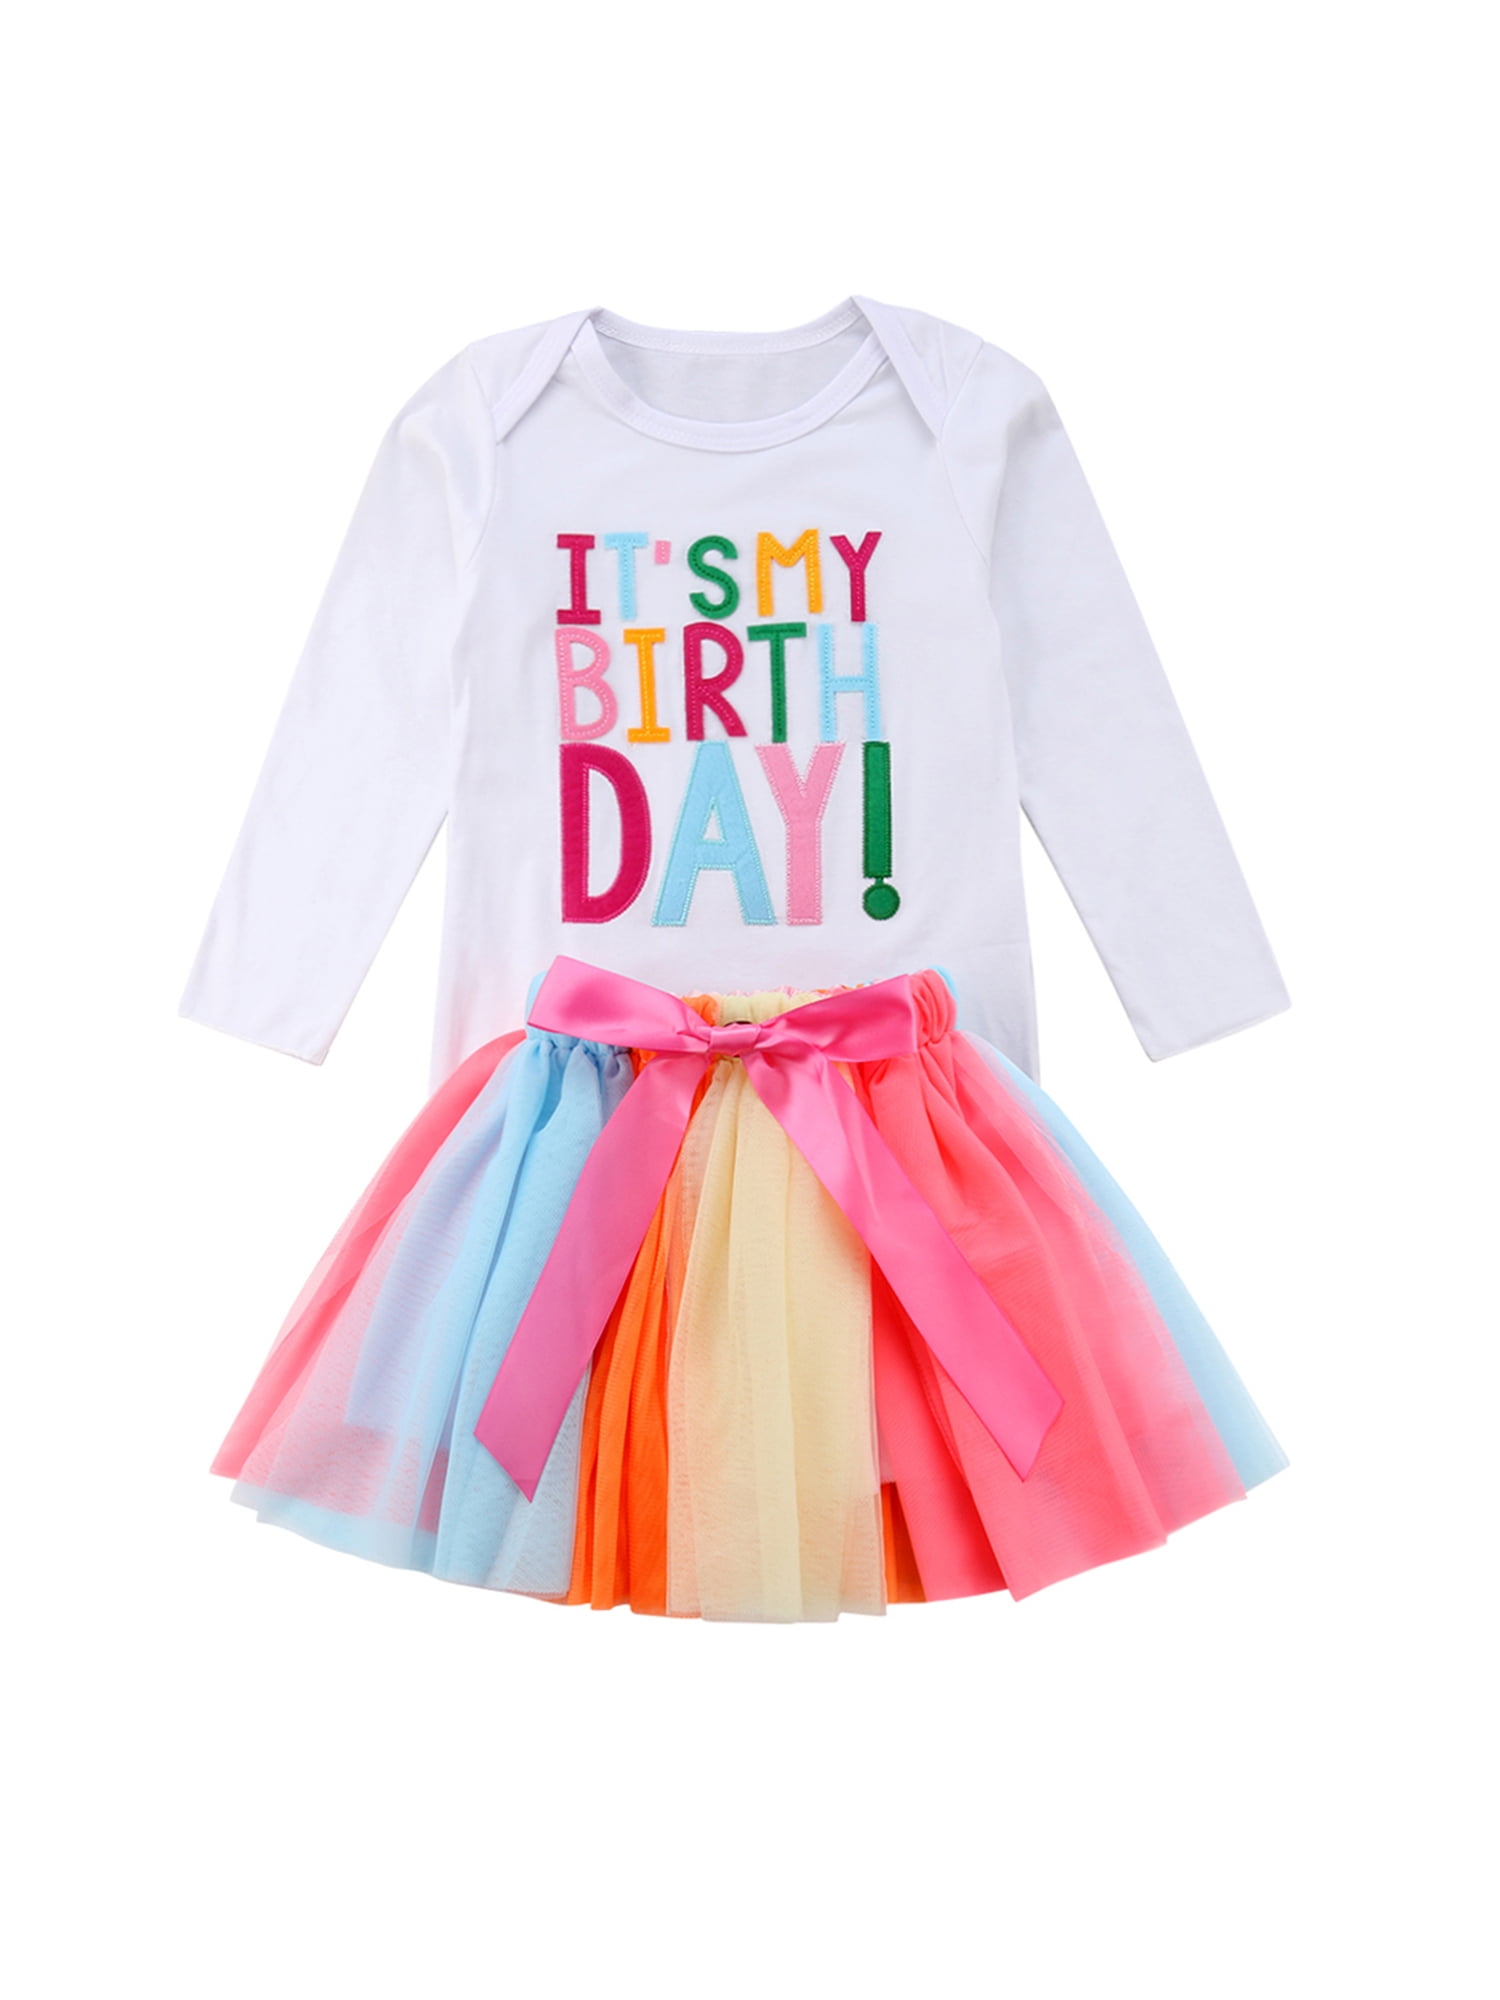 US Toddler Kids Baby Girl Autumn Outfit Clothes T-shirt Tops+Tutu Skirt 2PCS Set